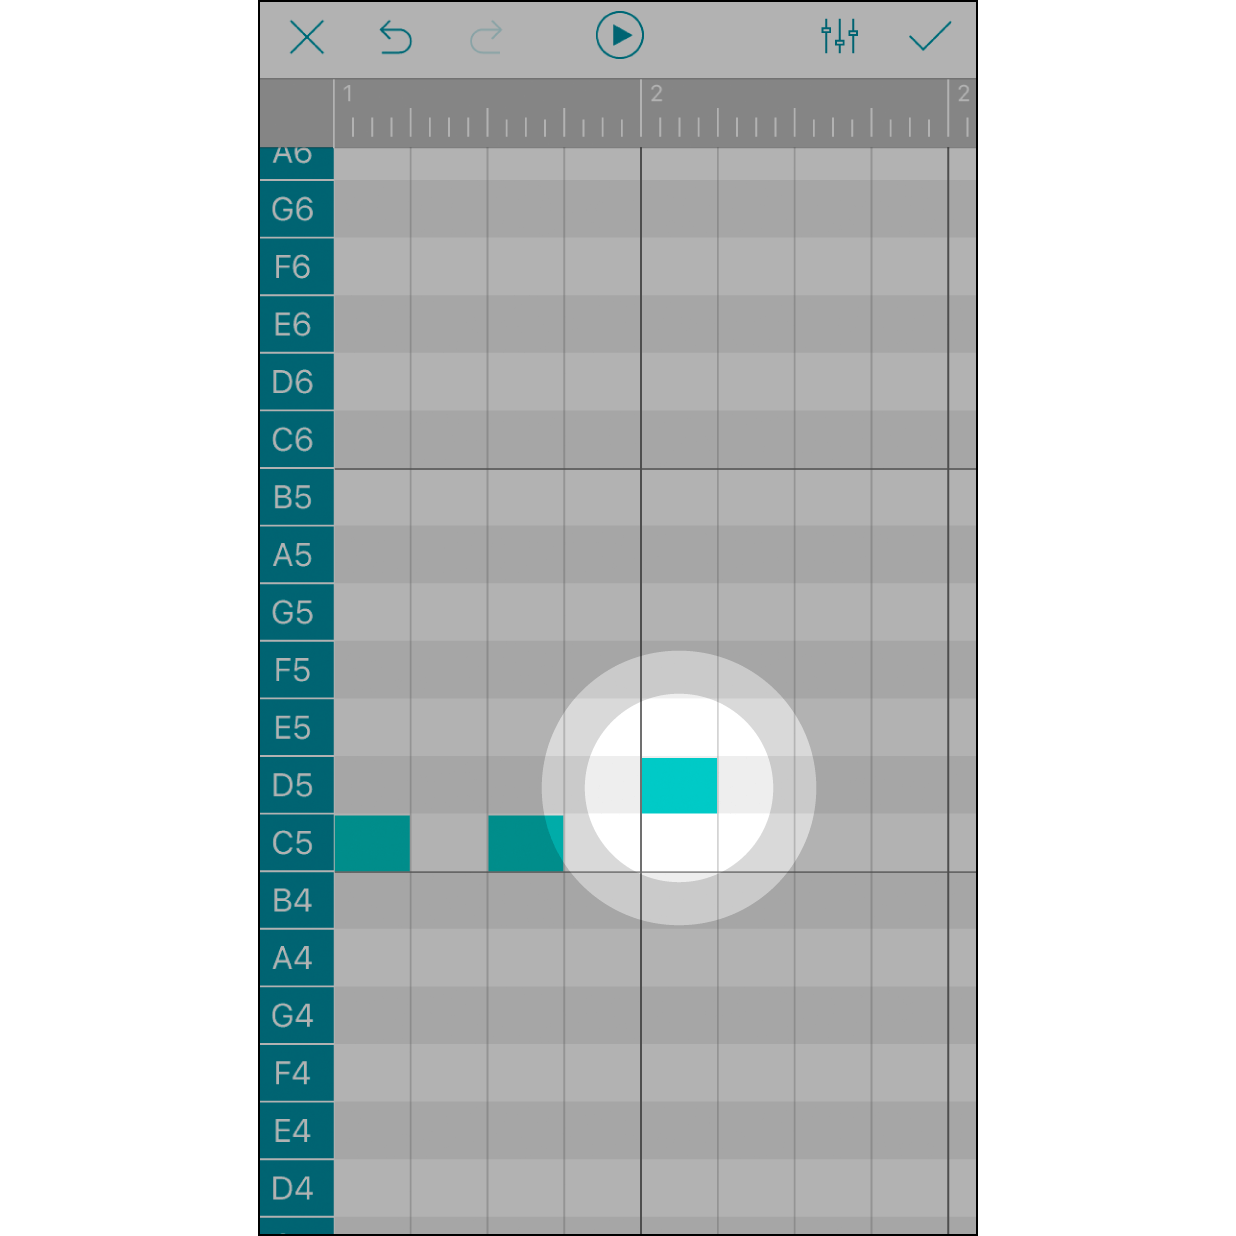 輕點增加音符輕點螢幕方格會出現對應音階，再次點擊以取消。每一個格子是16分音符。畫面最上方的灰色橫軸內顯示的數字是拍數。